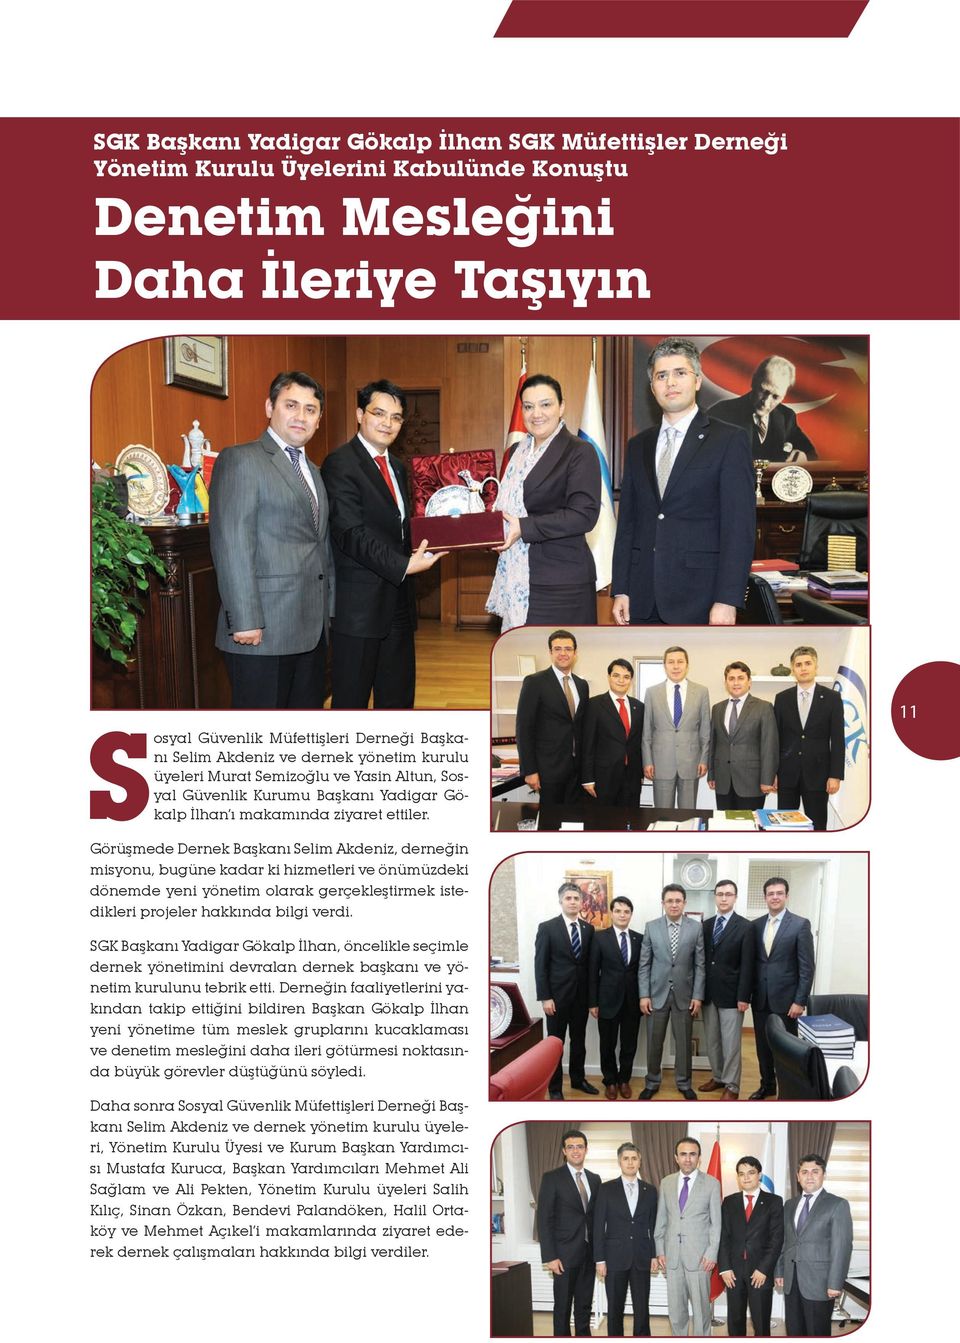 11 Görüşmede Dernek Başkanı Selim Akdeniz, derneğin misyonu, bugüne kadar ki hizmetleri ve önümüzdeki dönemde yeni yönetim olarak gerçekleştirmek istedikleri projeler hakkında bilgi verdi.